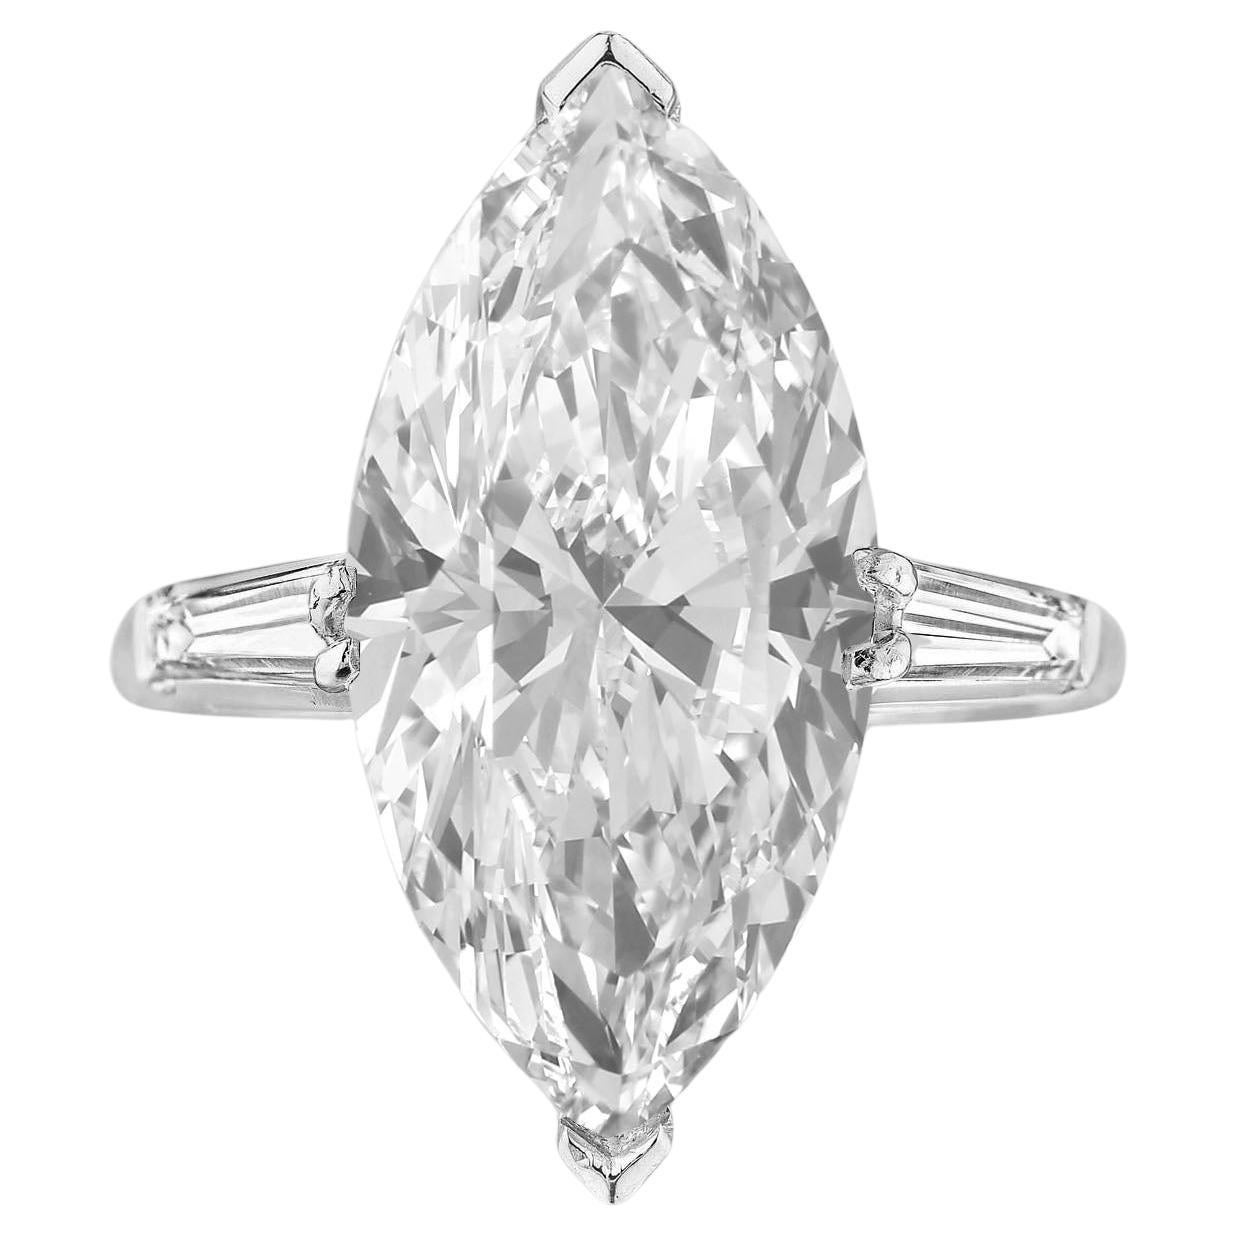 Diamant taille marquise de 4.01 carats certifié GIA avec baguette effilée